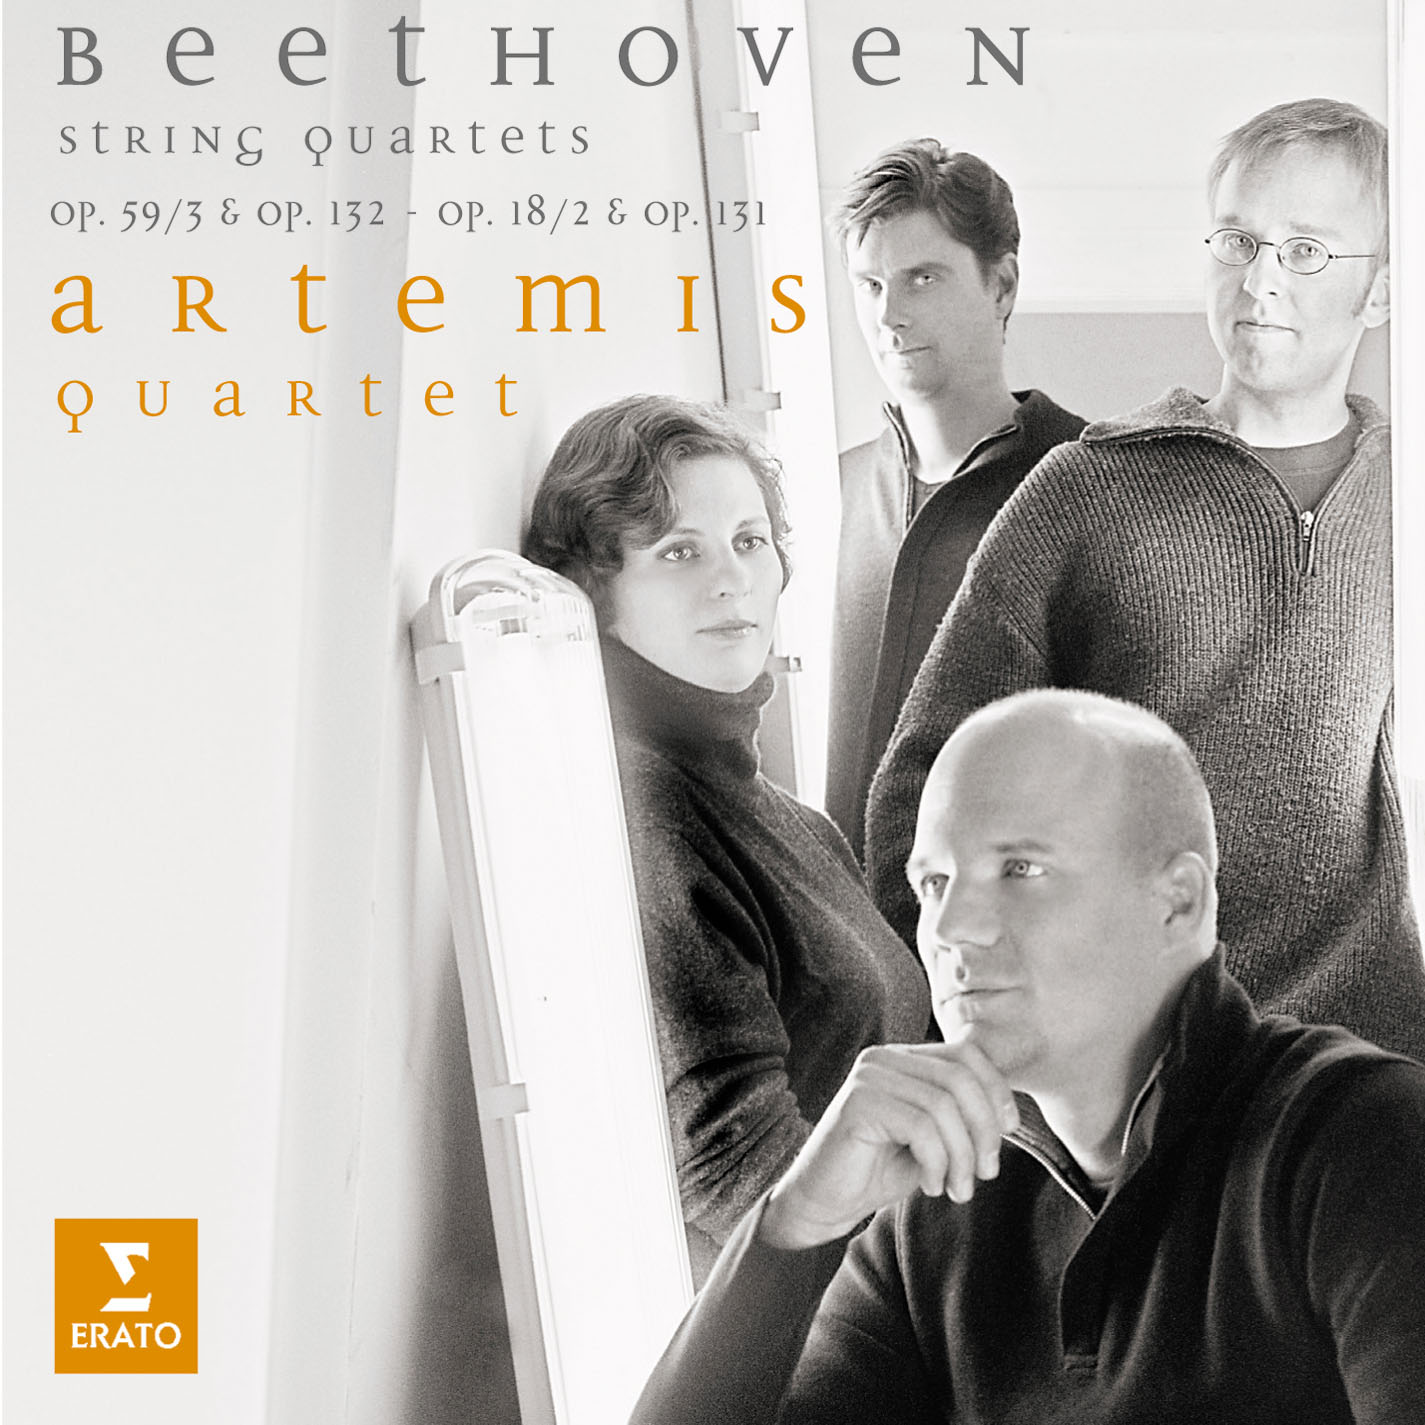 Beethoven String Quartets Op.131, Op.18-2, Op.132, Op.59-3